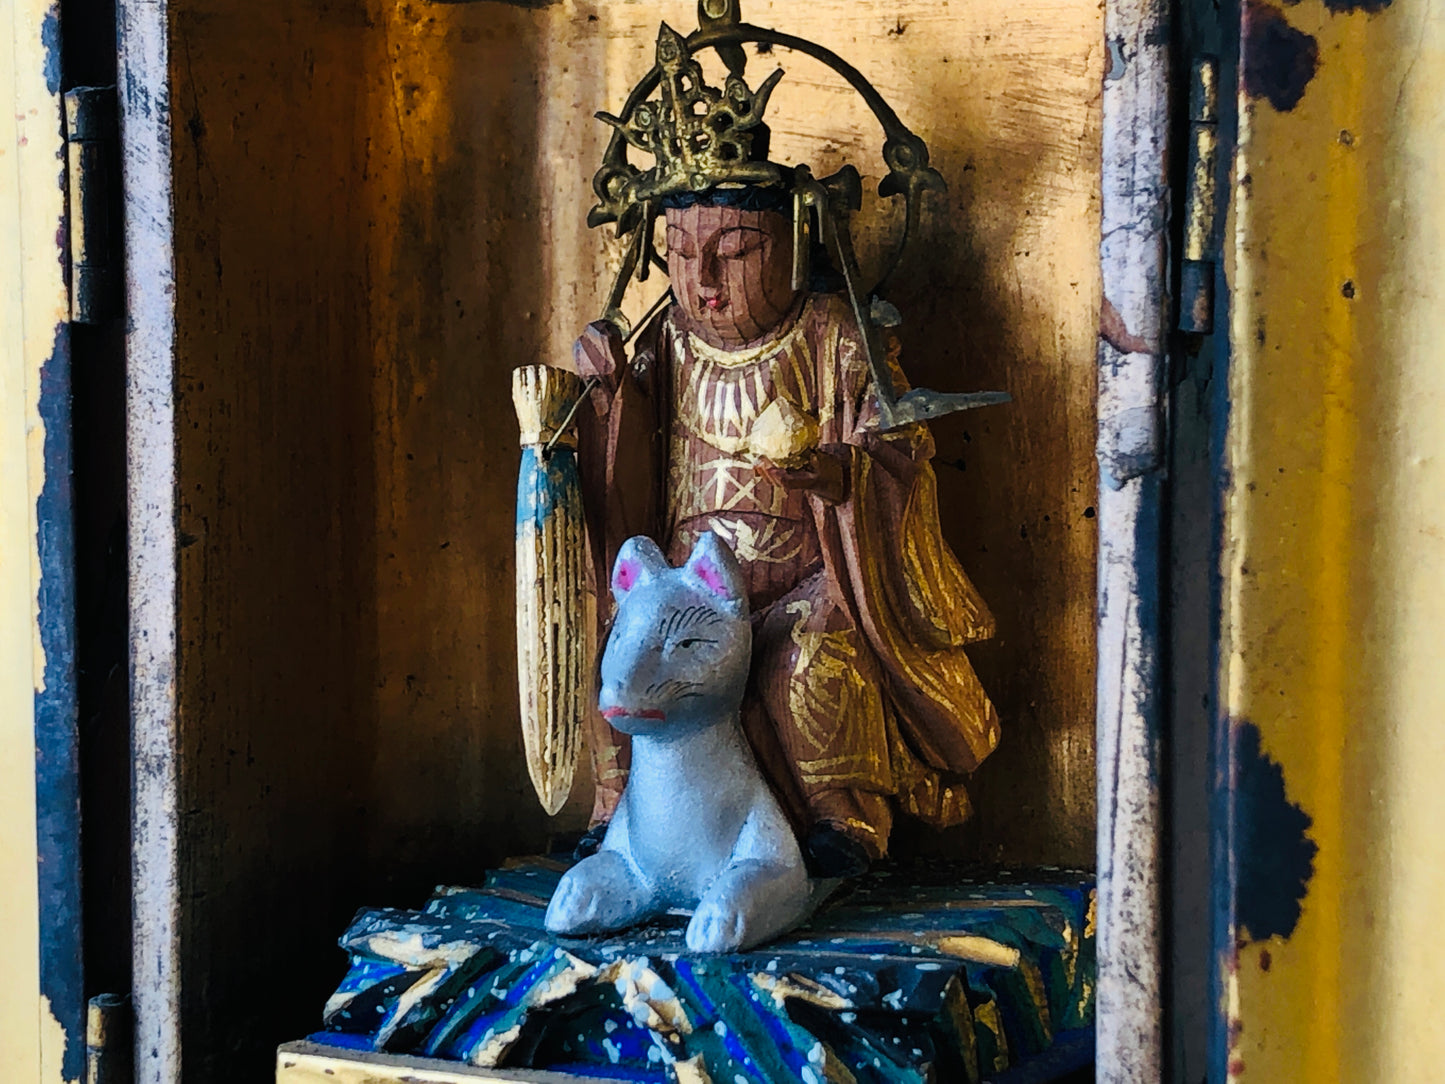 Y4365 STATUE Dakini Buddhist goddess figure shrine Japan vintage antique